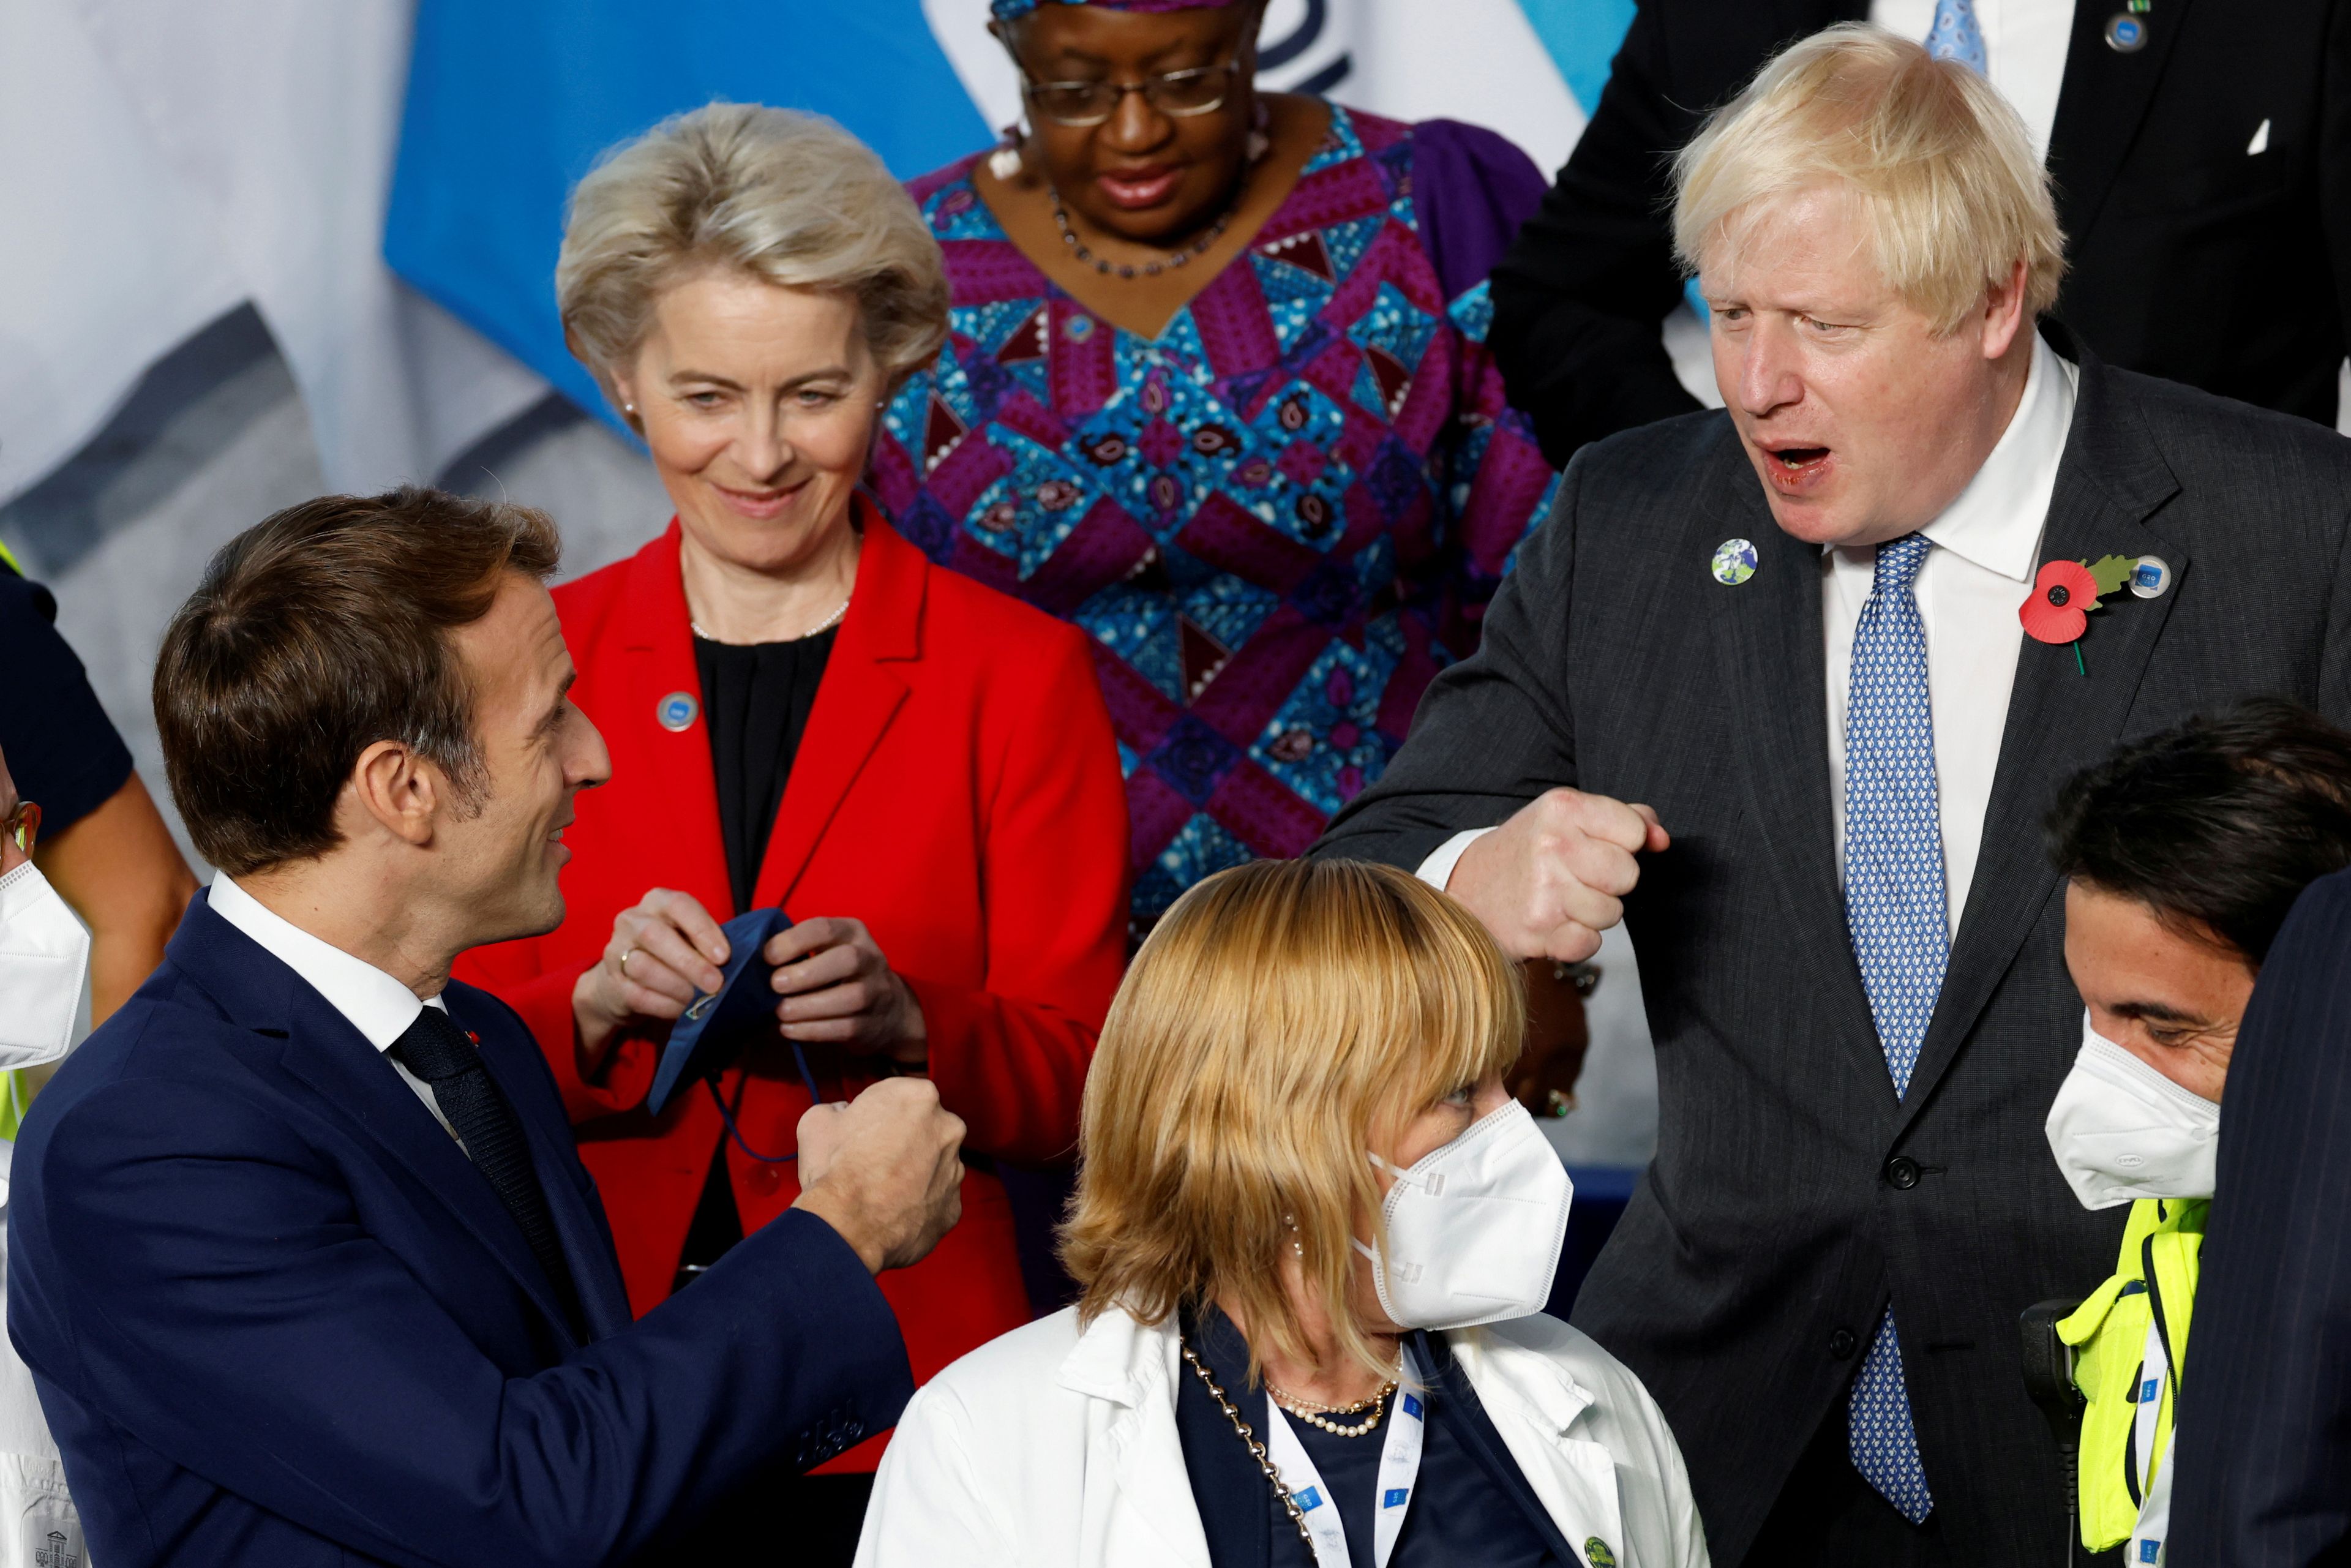 El presidente de Francia Emmanuel Macron saluda al primer ministro británico Boris Johnson, frente a la atenta mirada de Ursula von der Leyen, presidenta de la Comisión Europea.